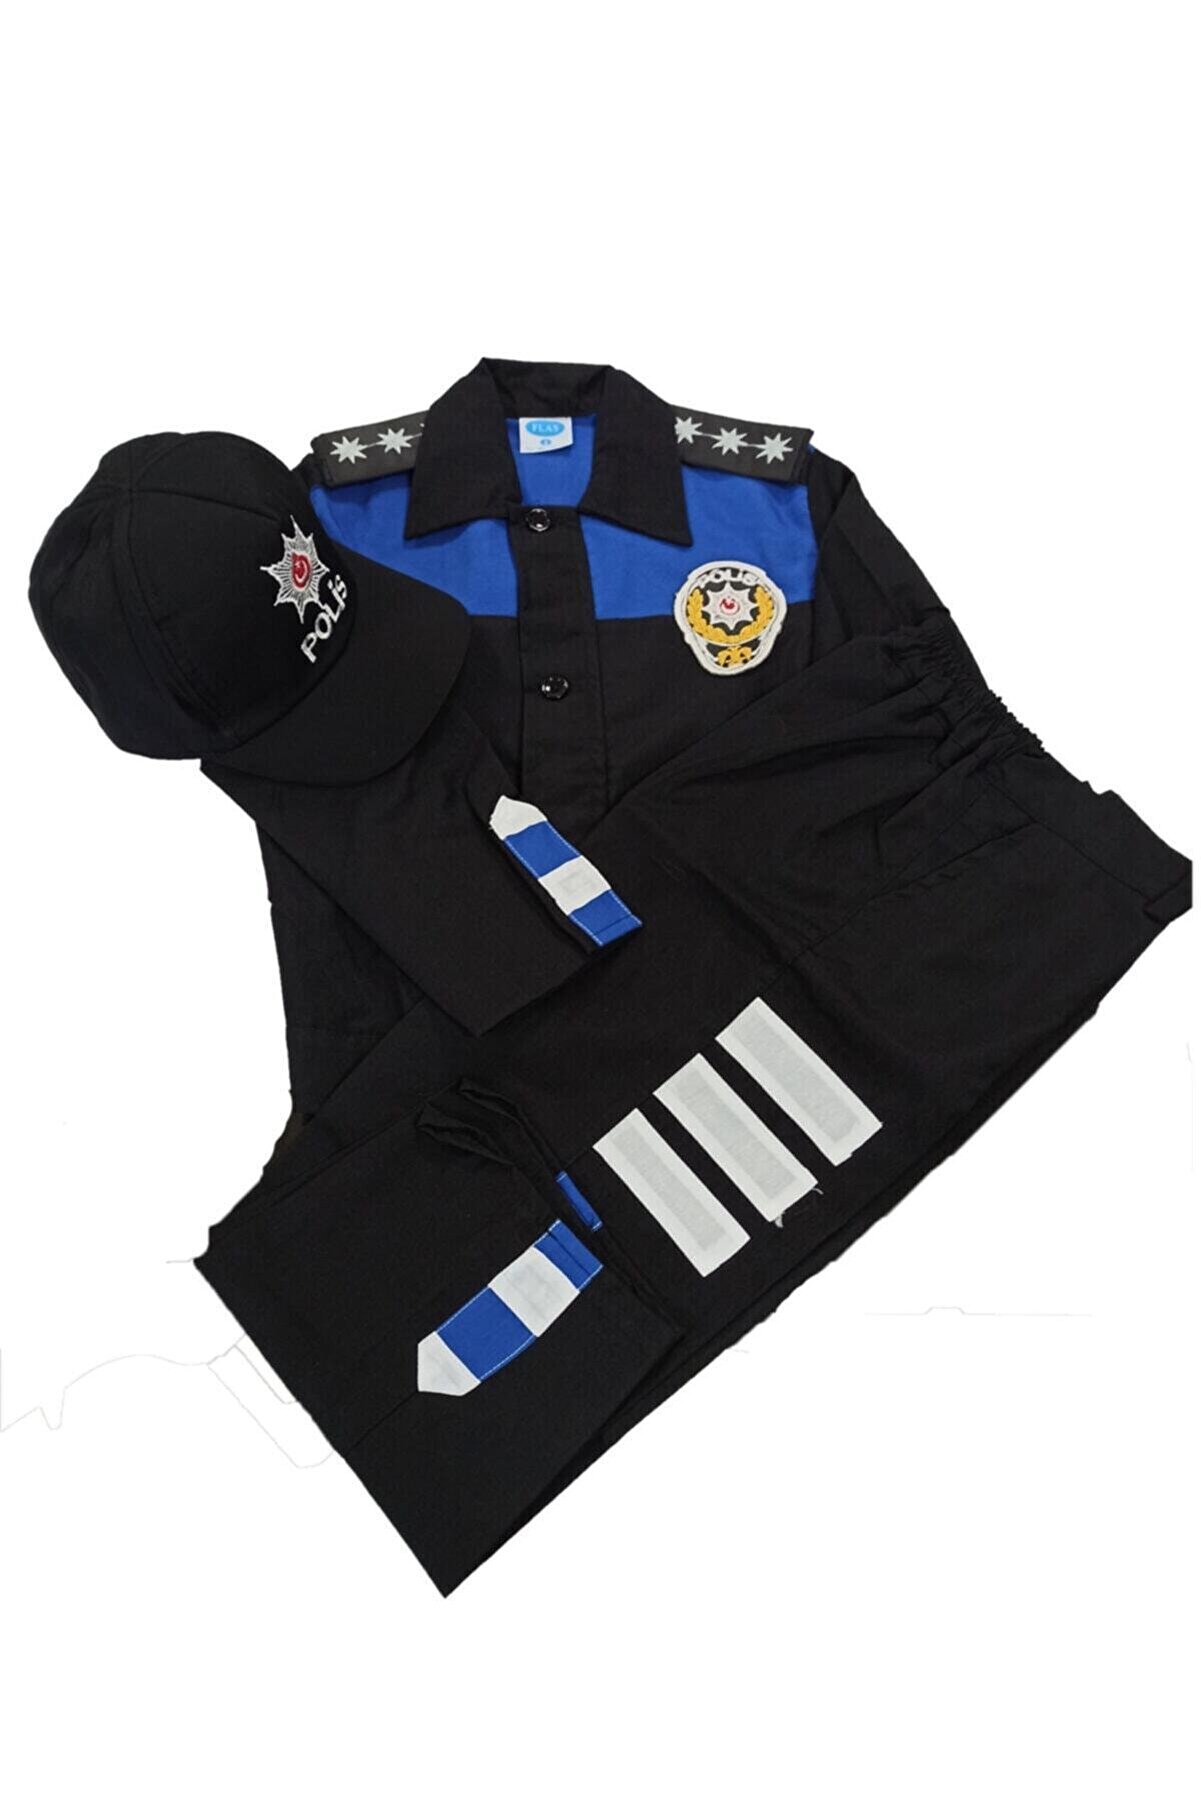 MrcTrend Çocuk Toplum Destekli Polis Kıyafeti 1-10 Yaş